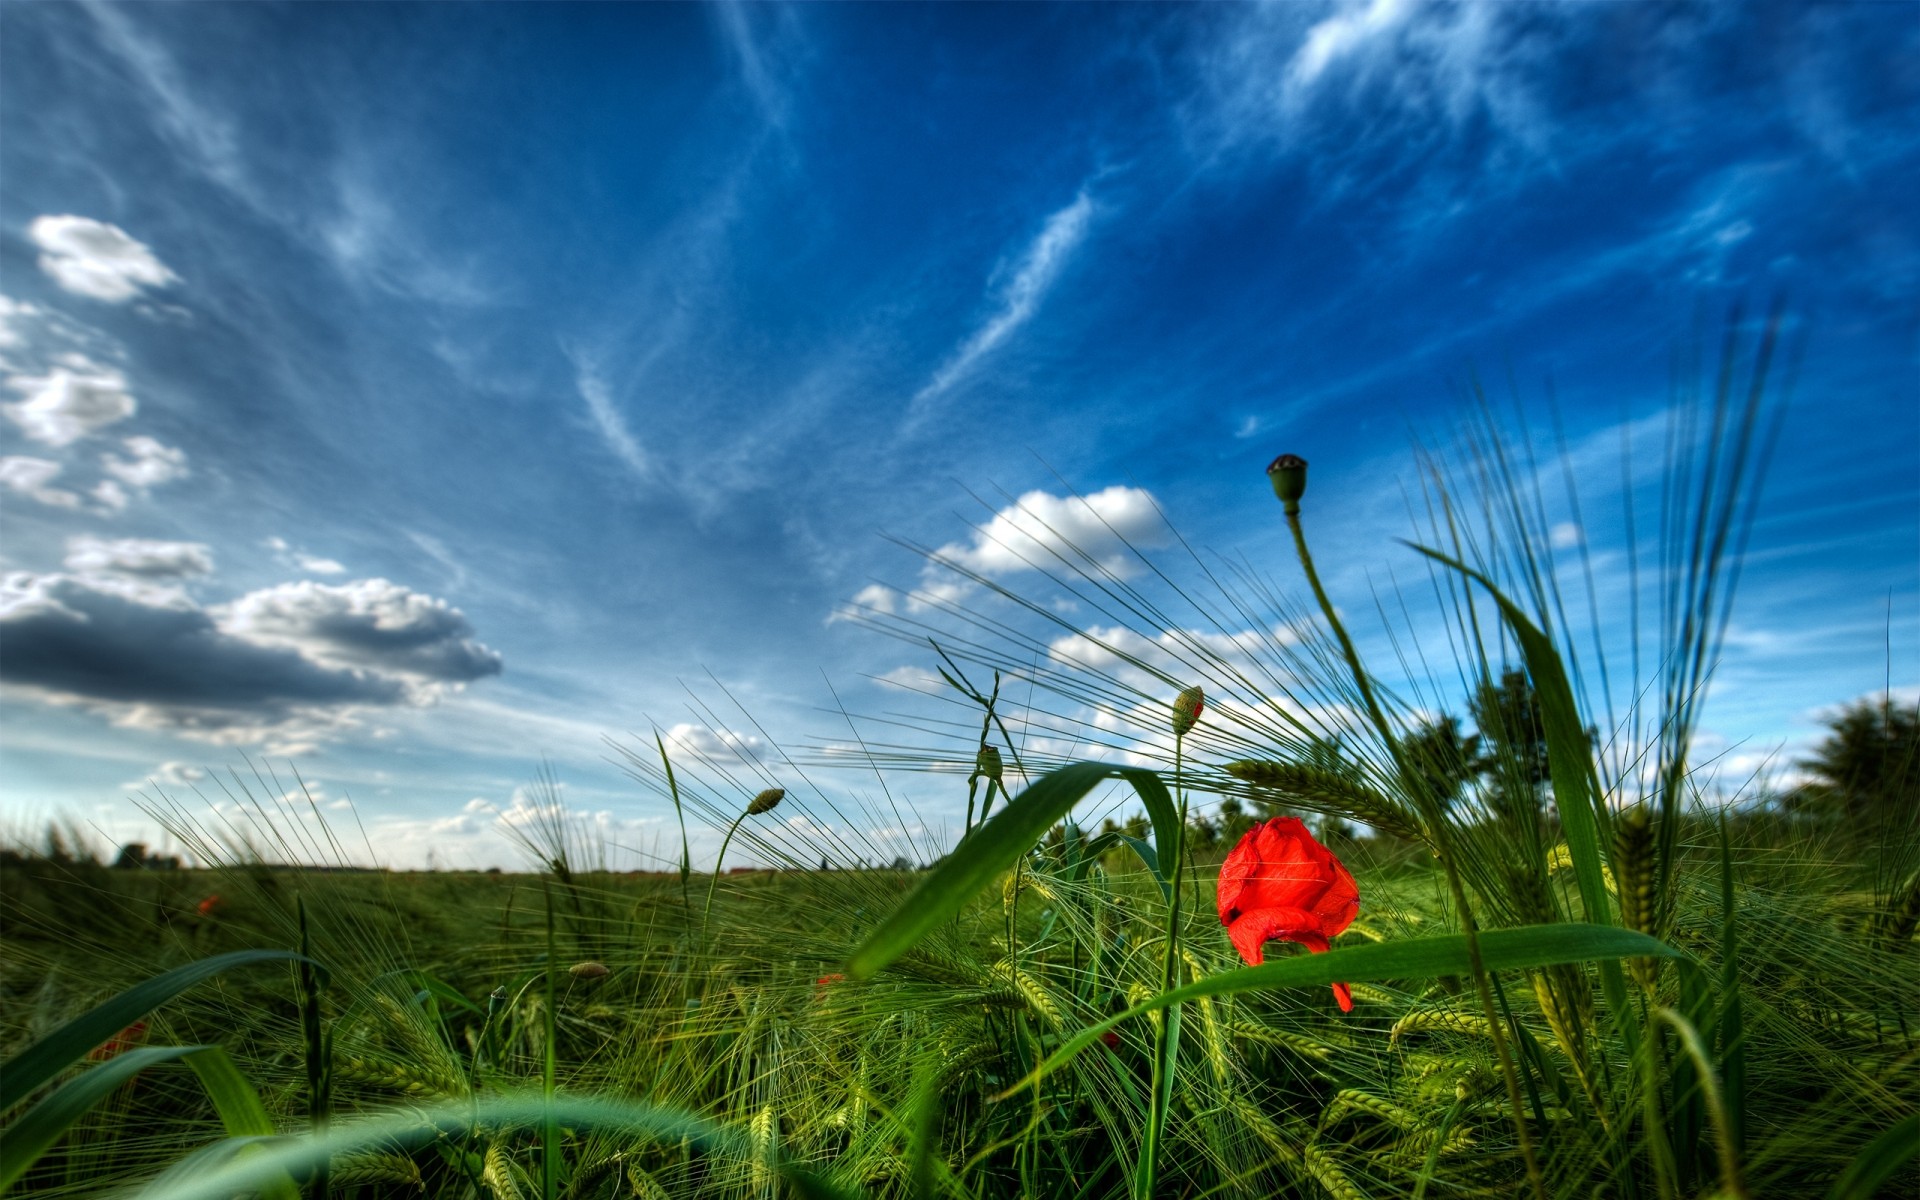 пейзажи трава небо поле сенокос природа пейзаж лето сельских облако солнце цветок ферма пастбище сельской местности хорошую погоду флора на открытом воздухе горизонт облачно пейзажи зеленый